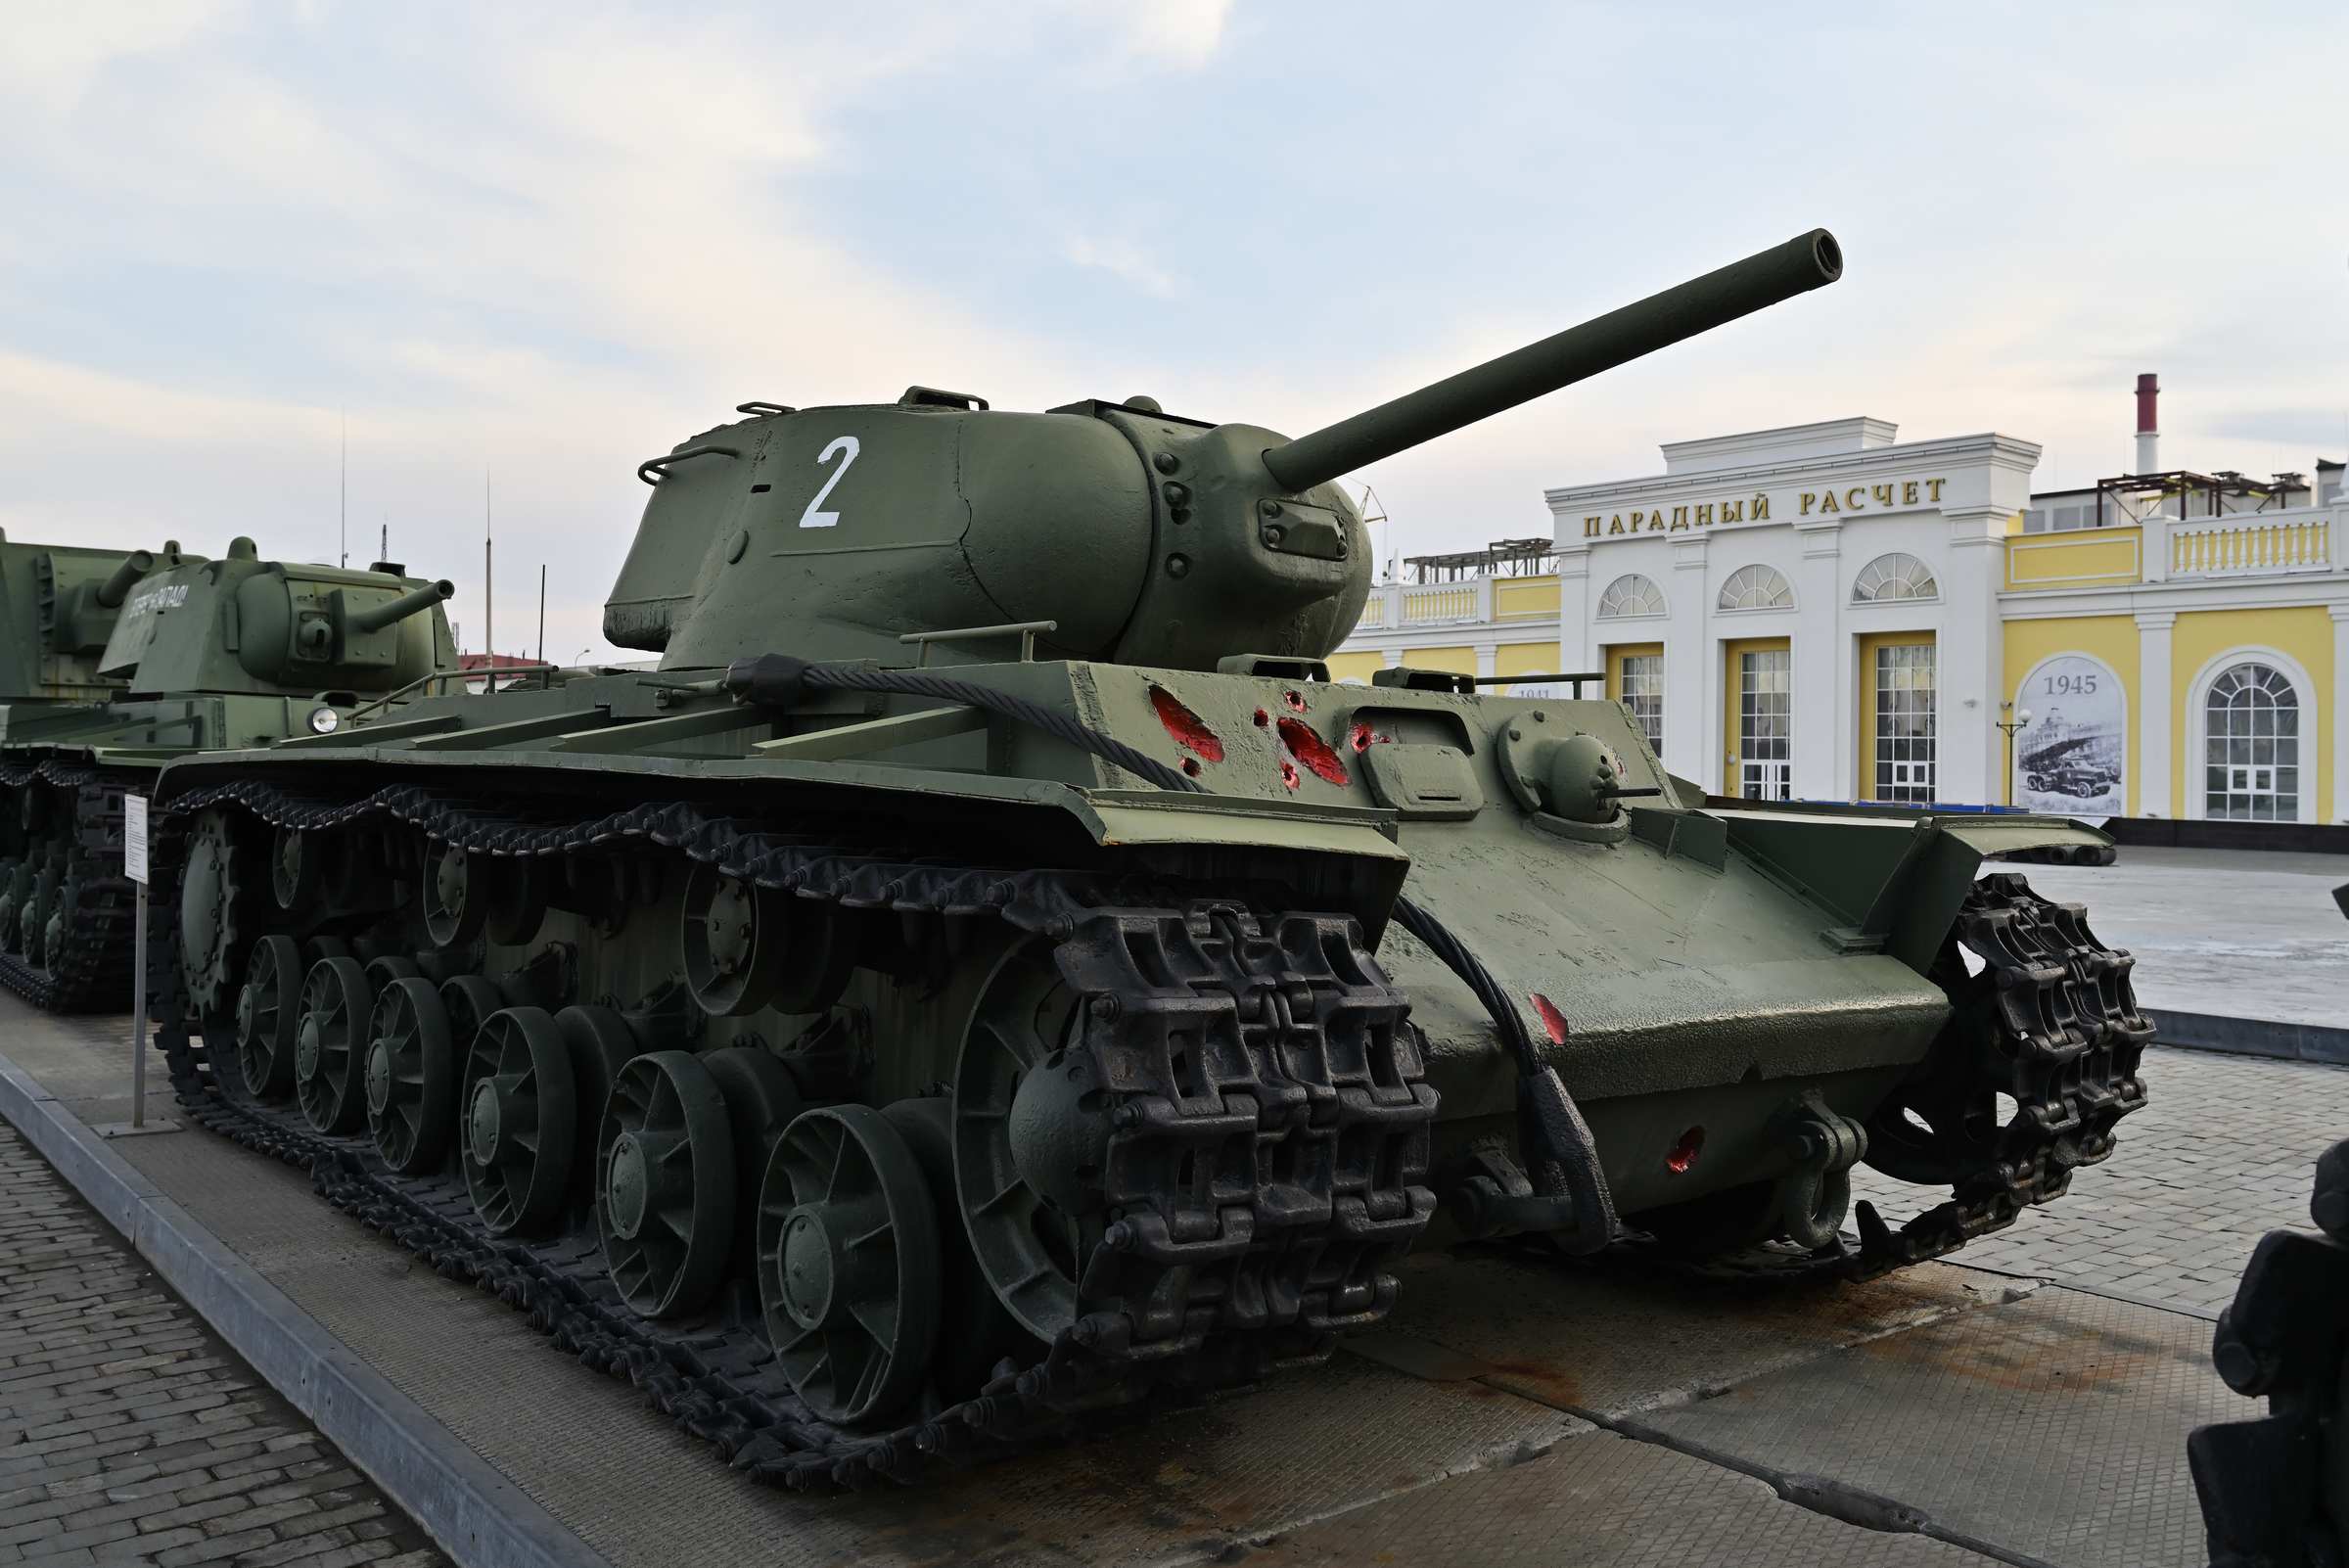 Екатеринбург. Выставочный центр «Парадный расчет» в Верхней Пышме. Тяжёлый танк КВ-1с образца 1942 года.